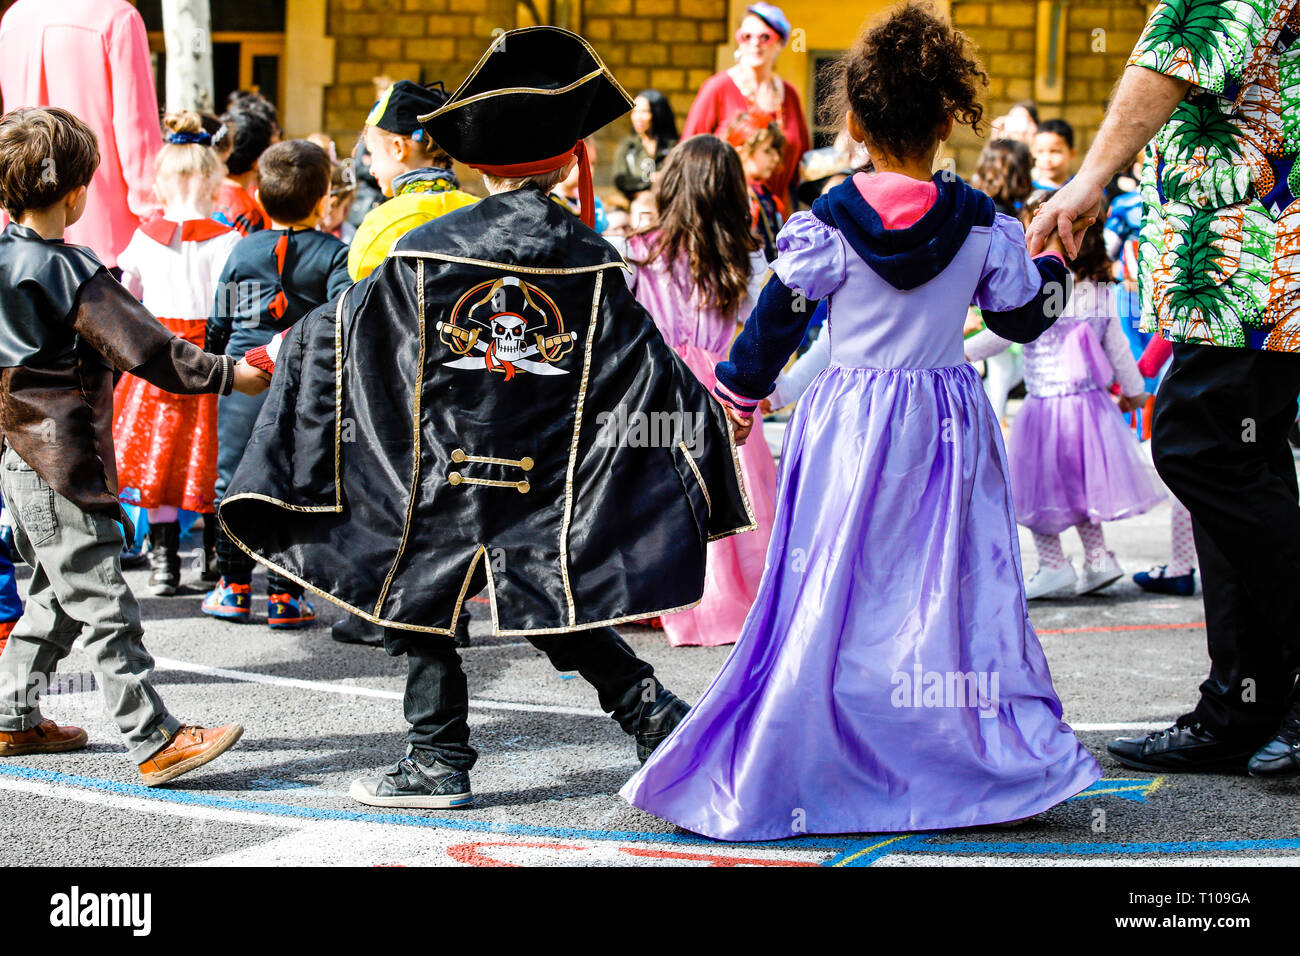 Kinder tragen Kostüme anlässlich des Karnevals in ihrer Schule Stockfoto